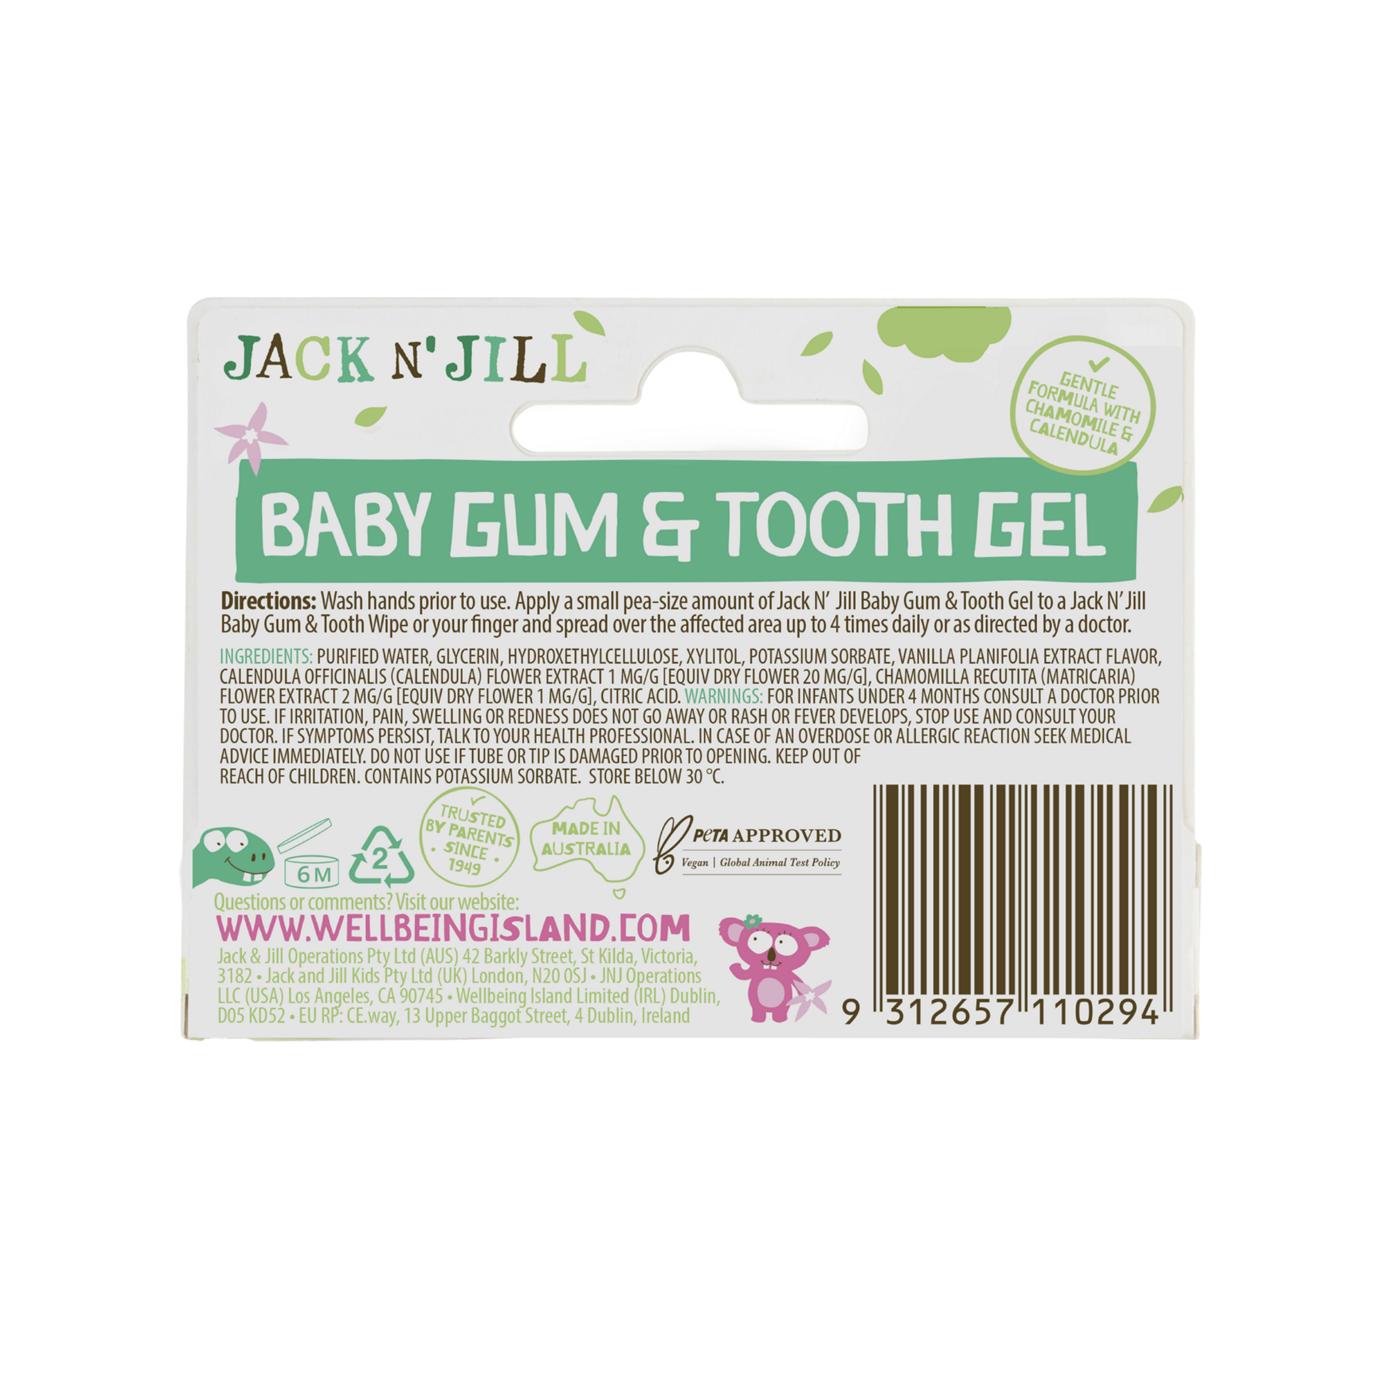 Jack N' Jill Baby Gum & Tooth Gel; image 2 of 2